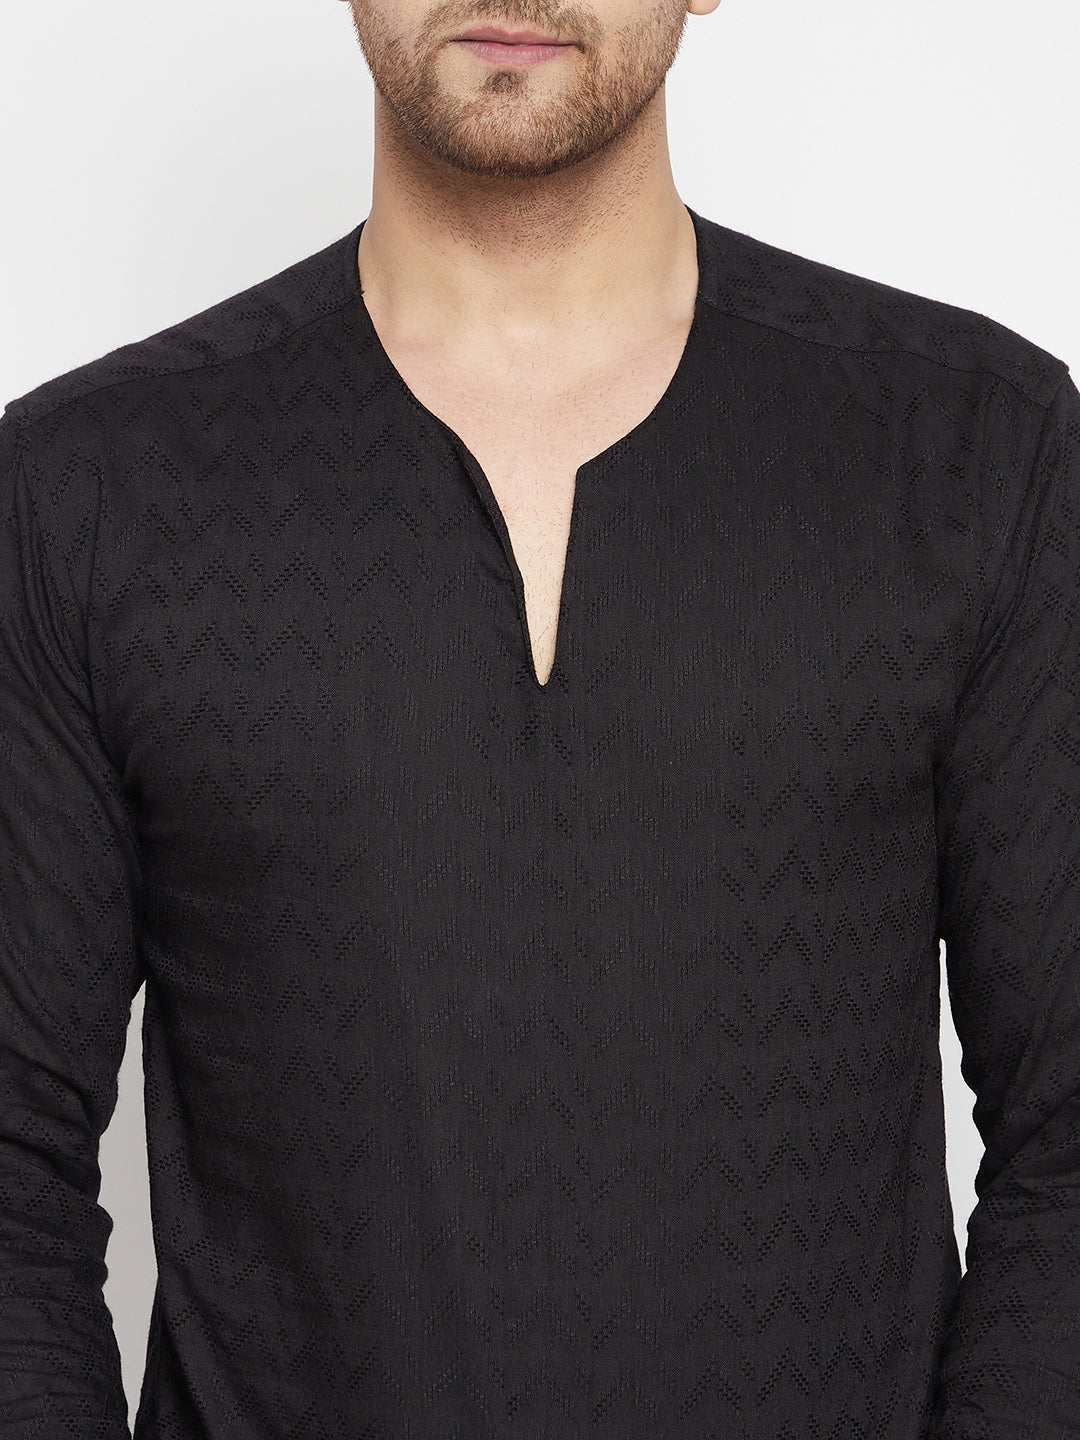 Men's Black Color Kurta with Slit Neckline - Even Apparels